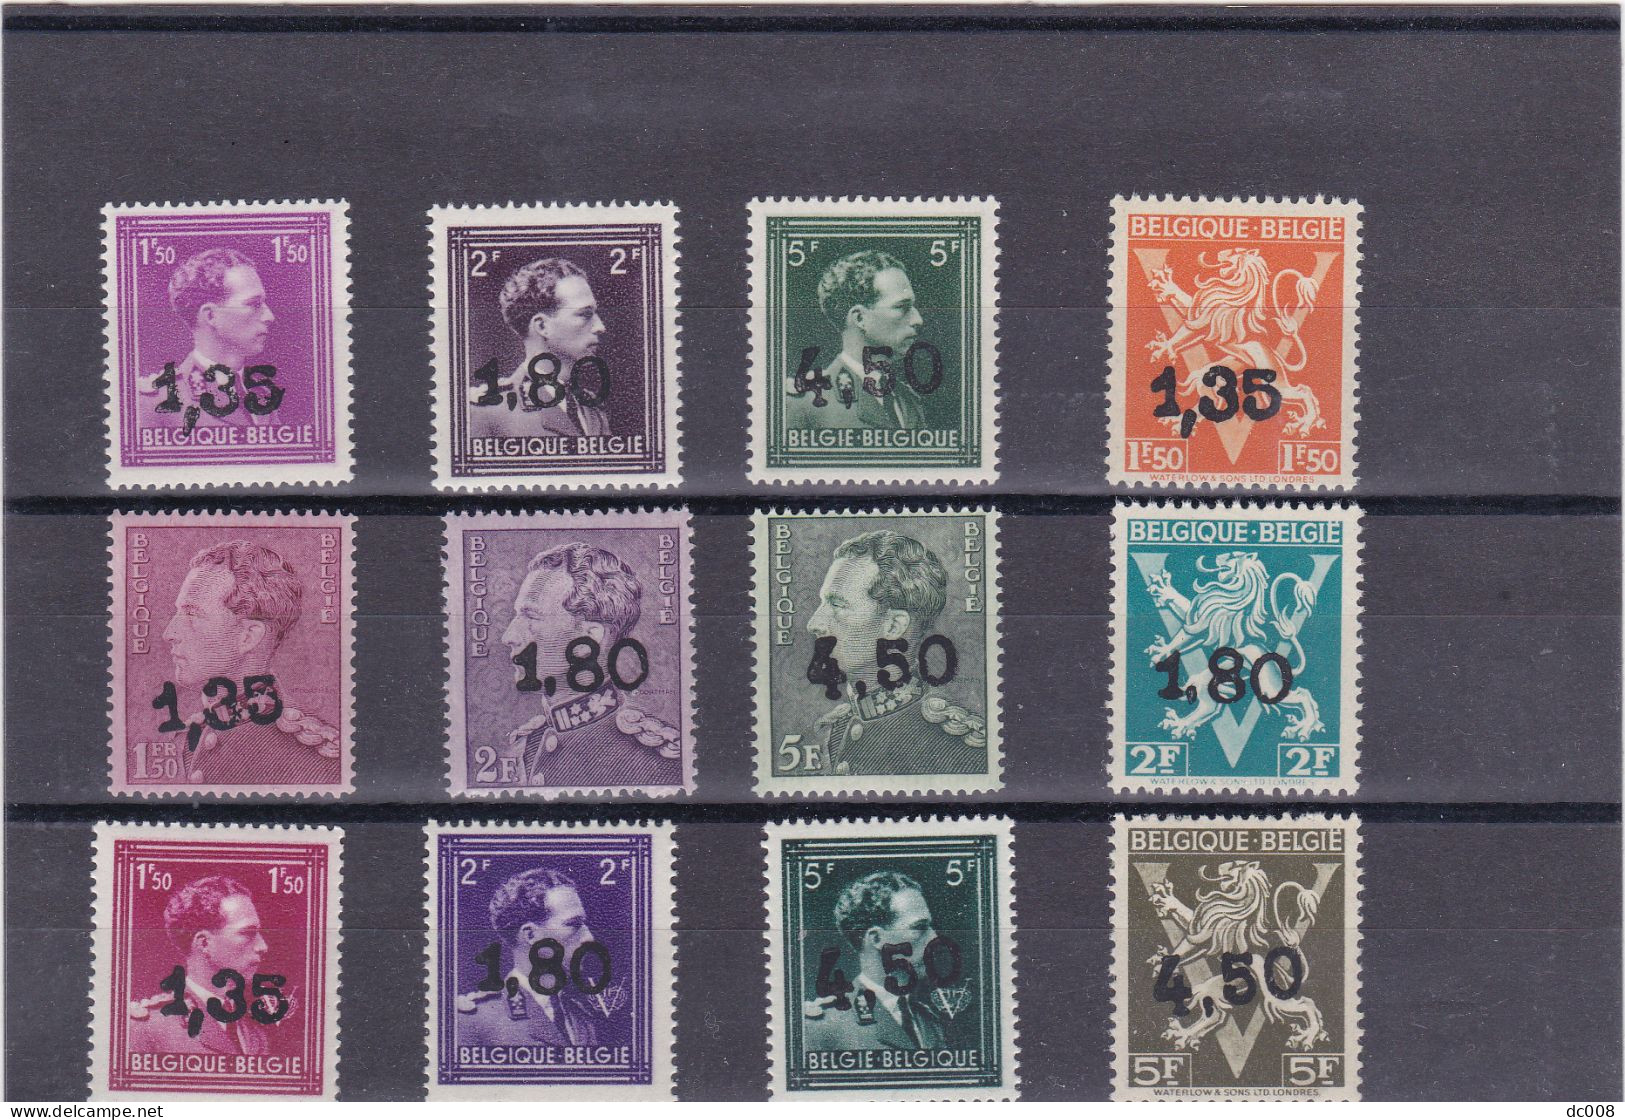 België 724X/24W **  Gellingen - Ghislenghien  Volledig-complet. MNH - Unused Stamps